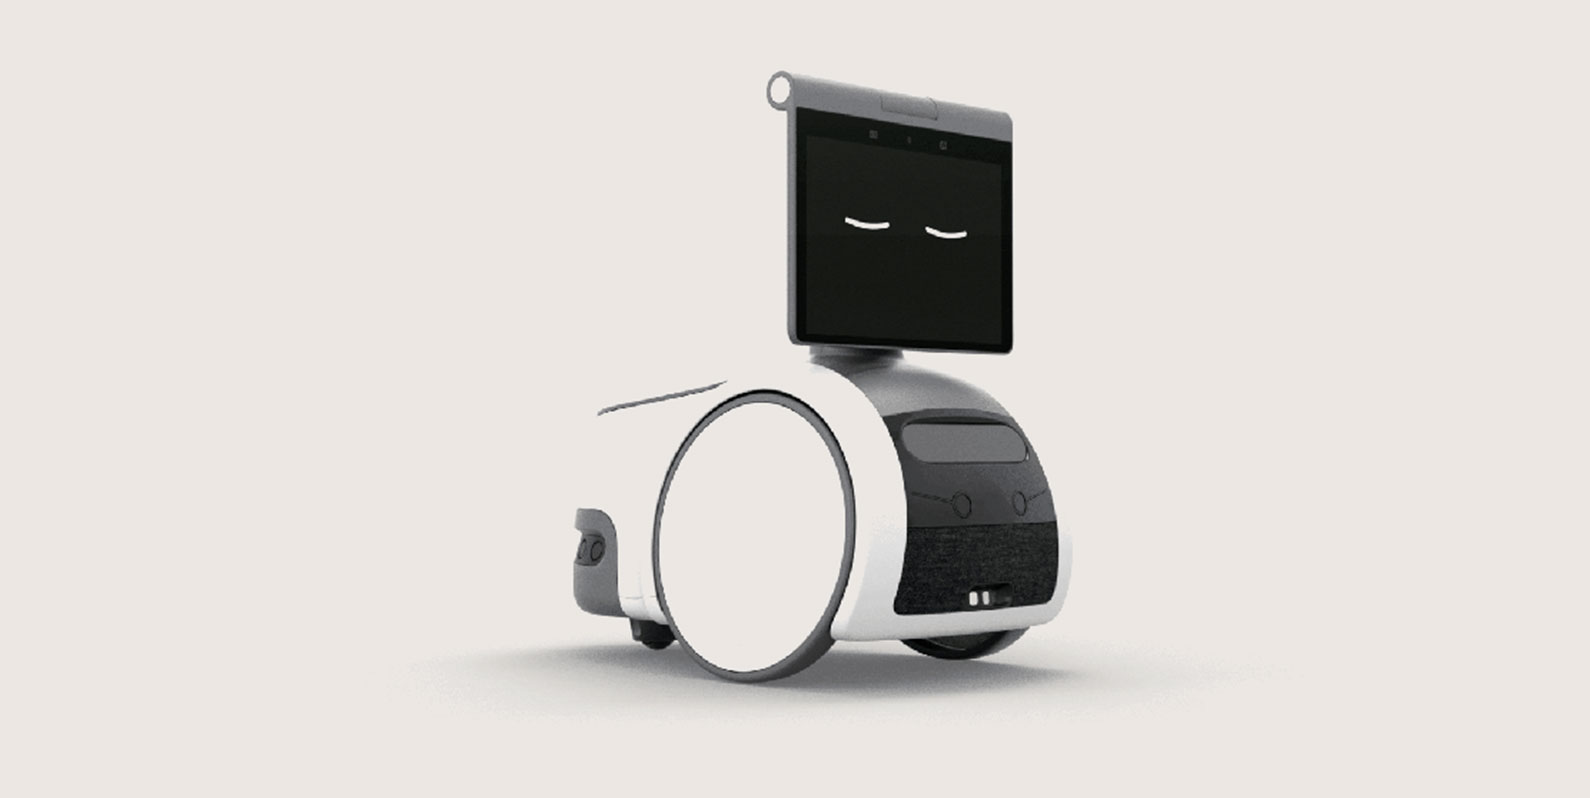 O robô Astro da Amazon é projetado para parecer inofensivo e nos apaixonarmos por ele